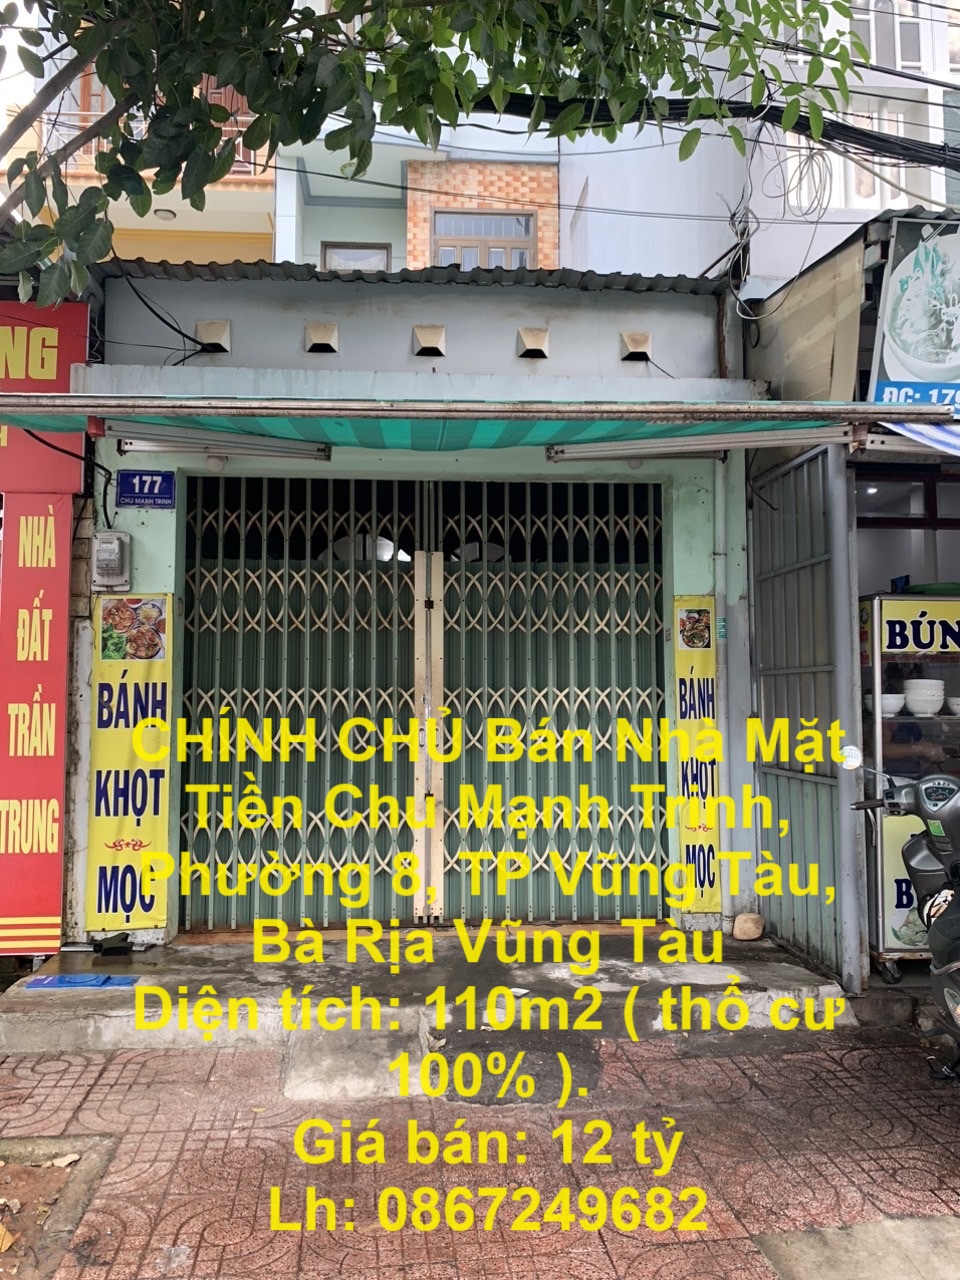 CHÍNH CHỦ Bán Nhà Mặt Tiền Chu Mạnh Trinh, Phường 8, TP Vũng Tàu, Bà Rịa Vũng Tàu - Ảnh chính